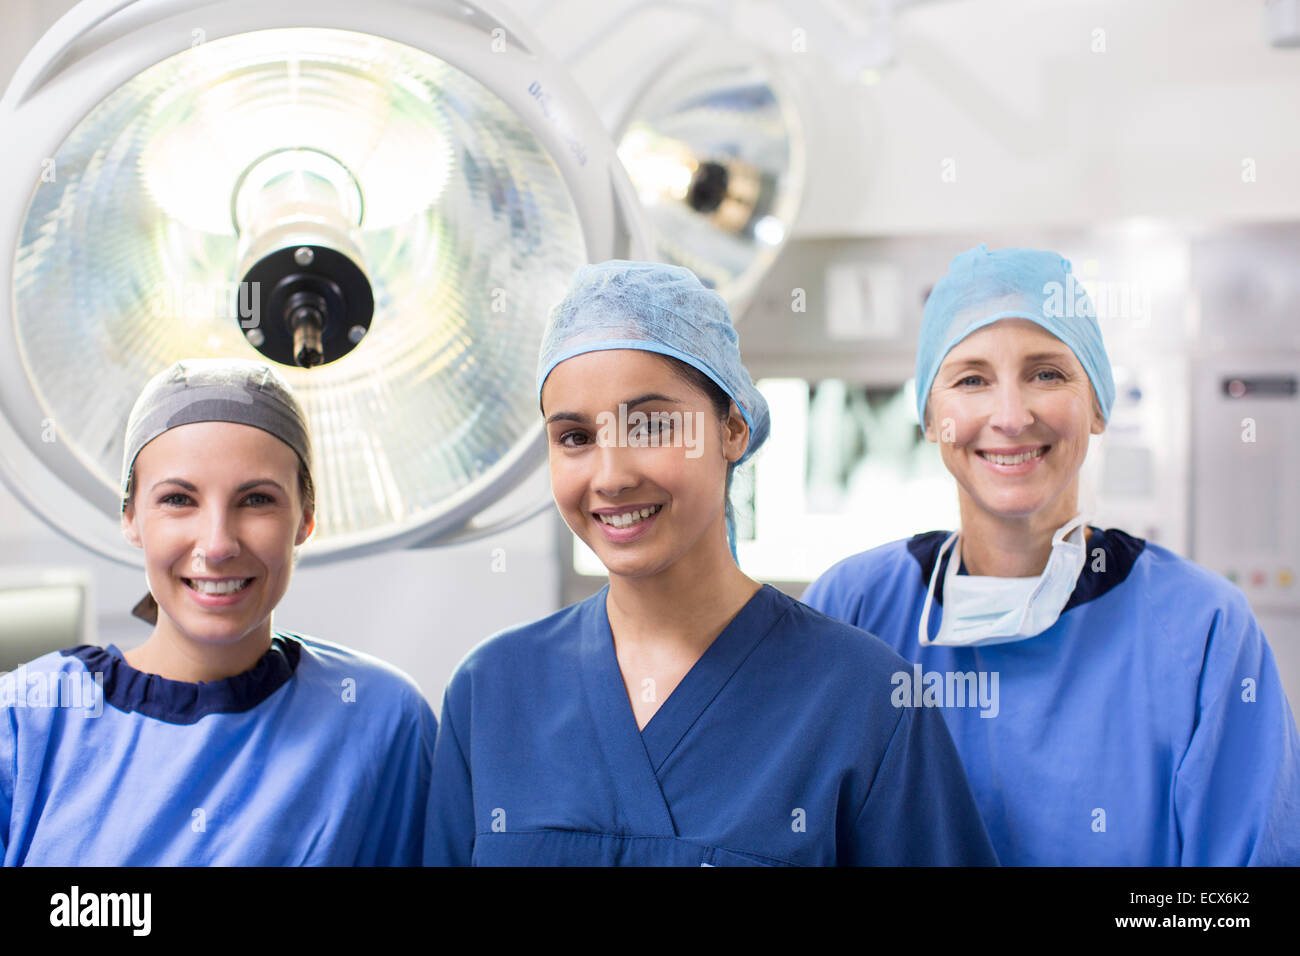 Porträt von drei weiblichen Chirurgen im Operationssaal Stockfoto